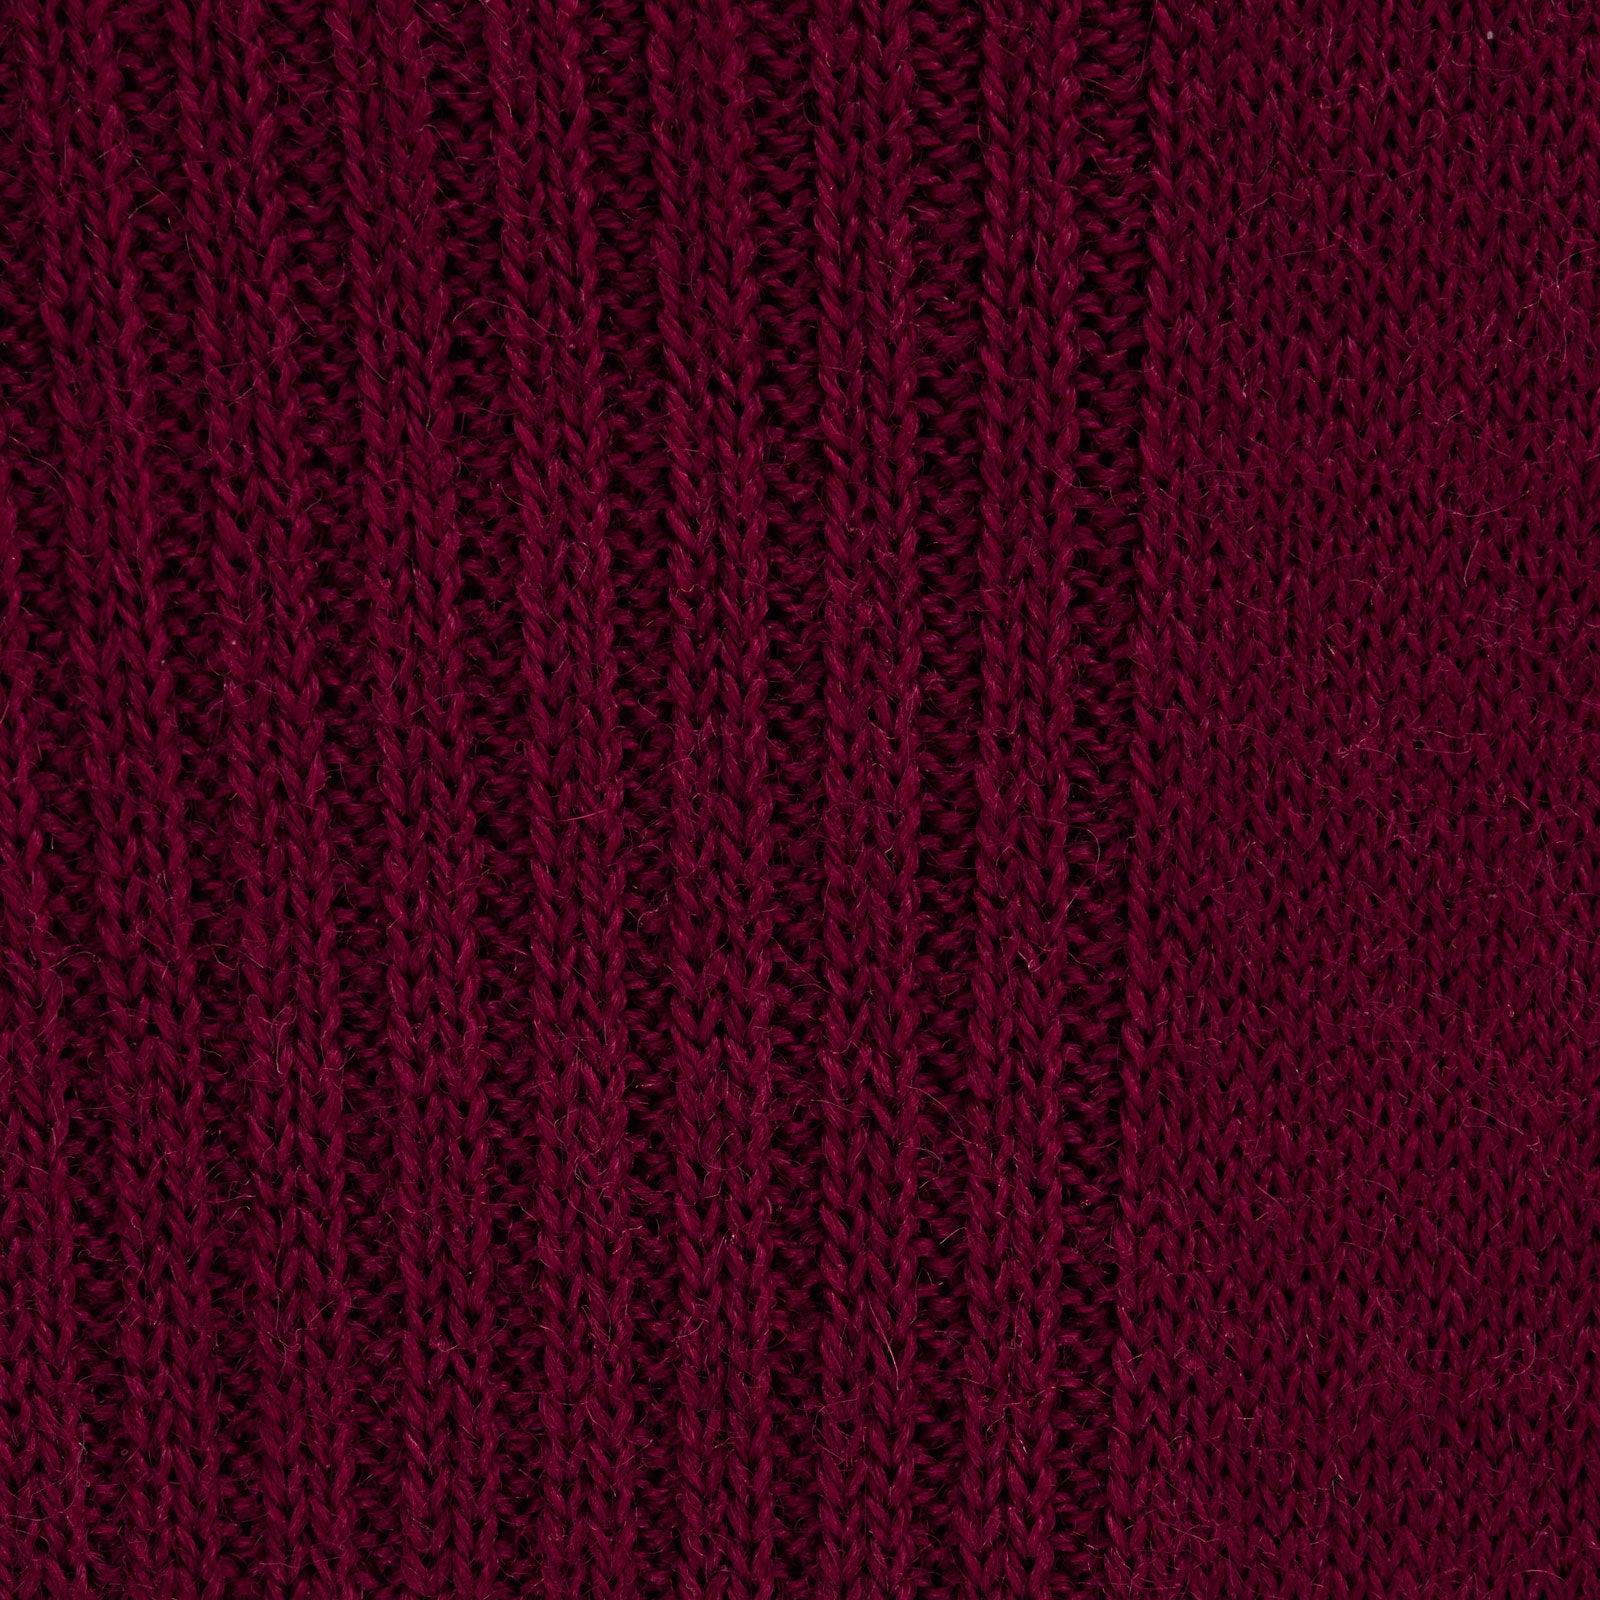 Bordeaux Long Merino Wool Socks